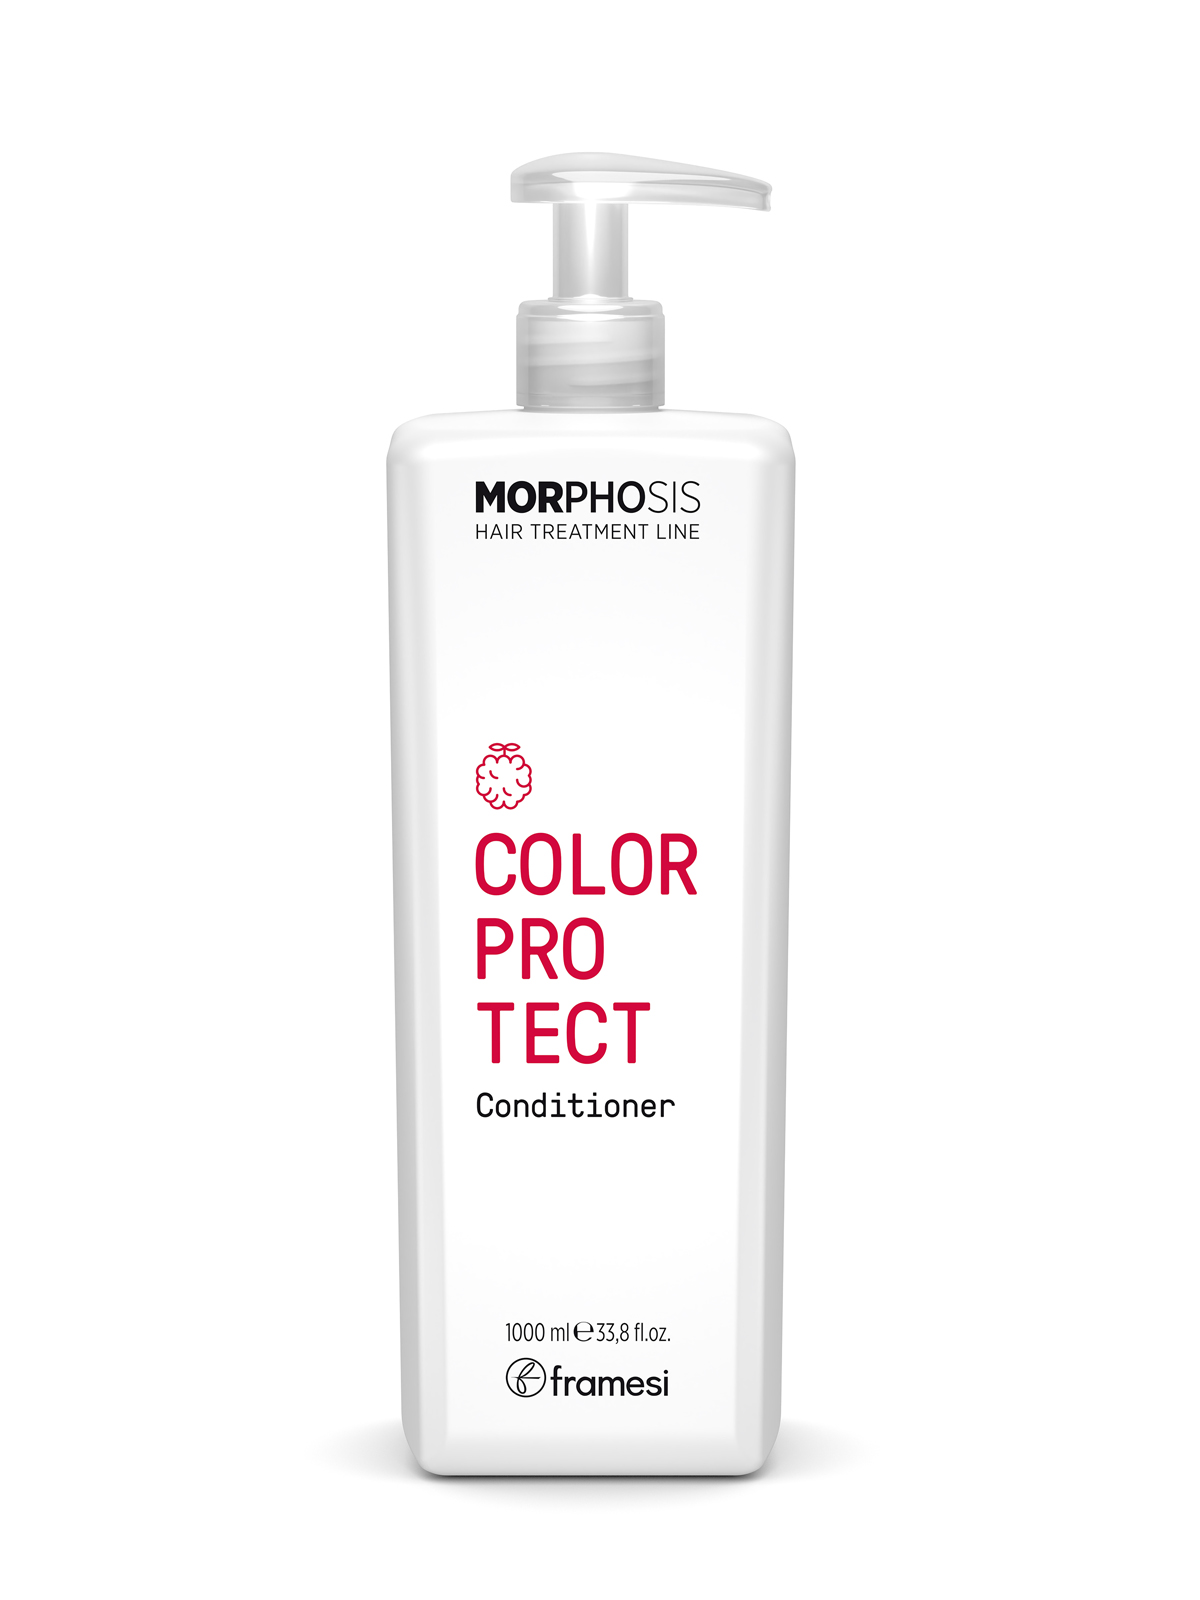 Кондиционер Framesi Color protect Conditioner для окрашенных волос  1000 мл кондиционер для окрашенных волос color protect a03503 250 мл